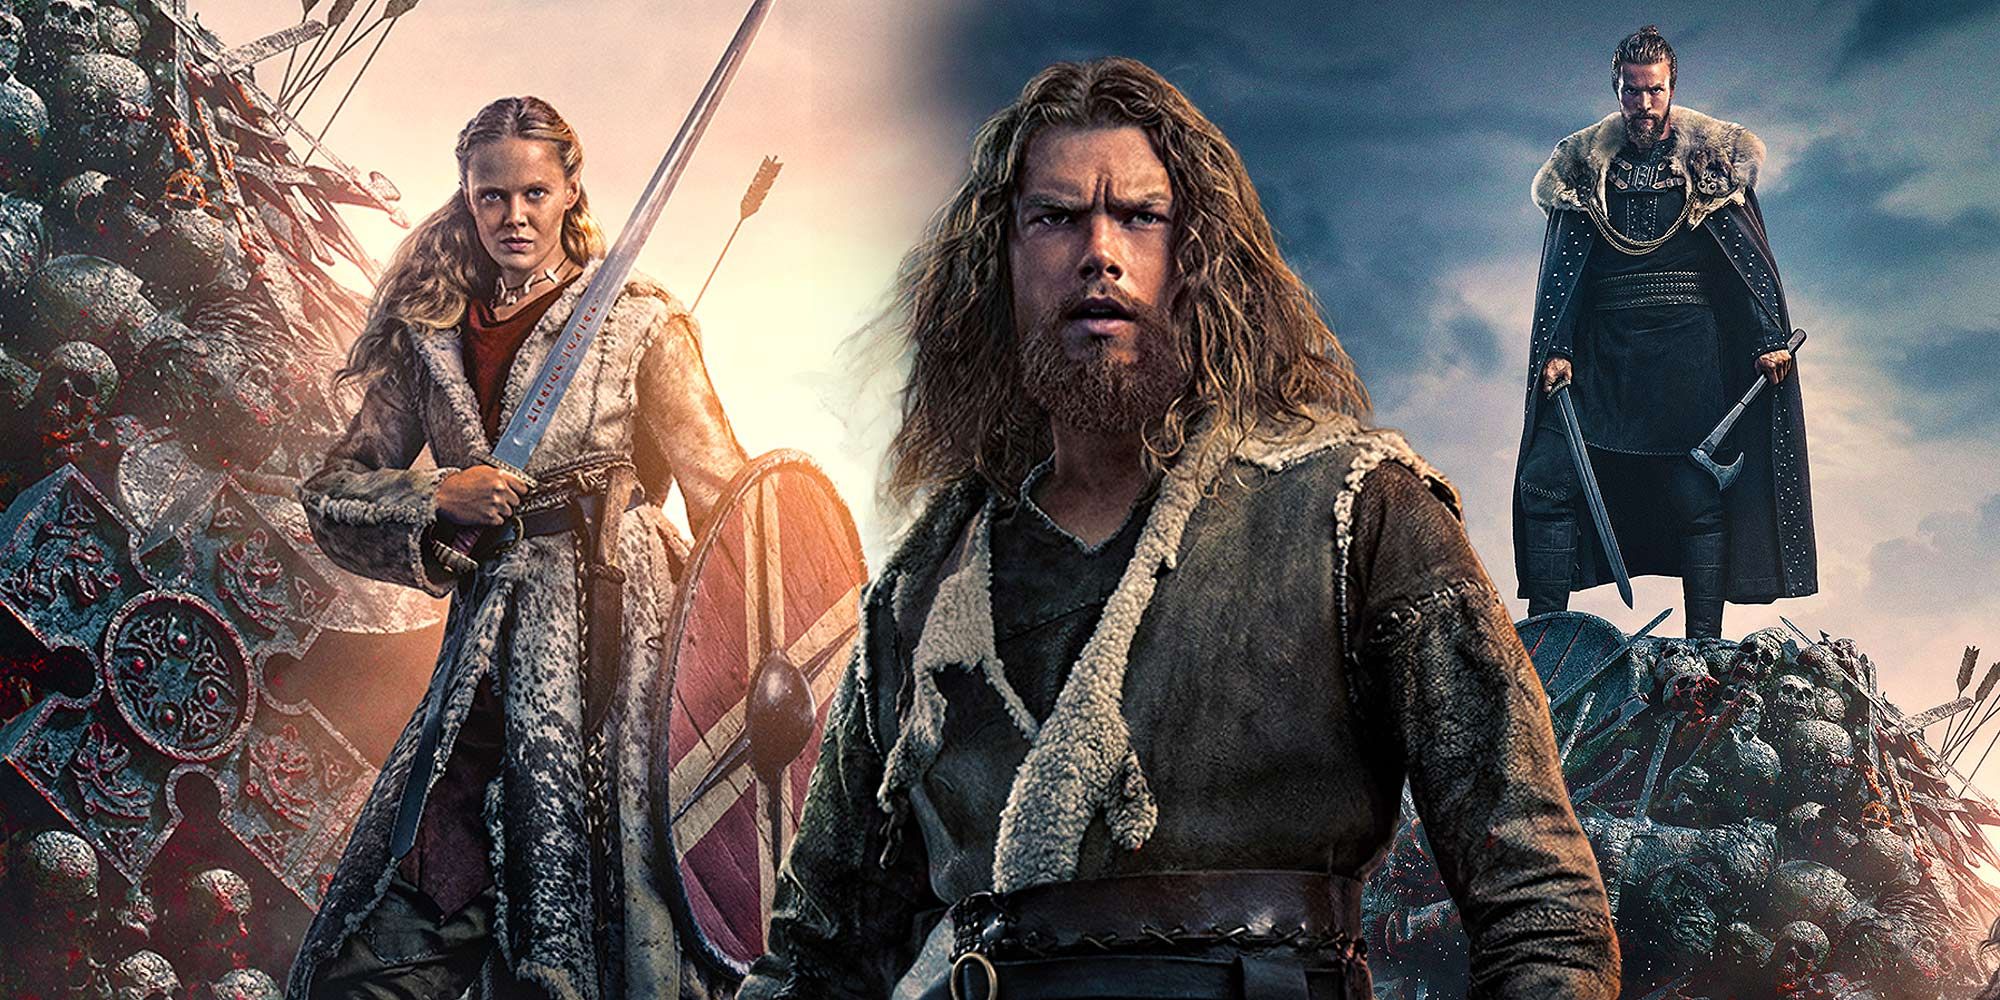 Lançamentos da Netflix em fevereiro de 2022: Vikings Valhalla e De